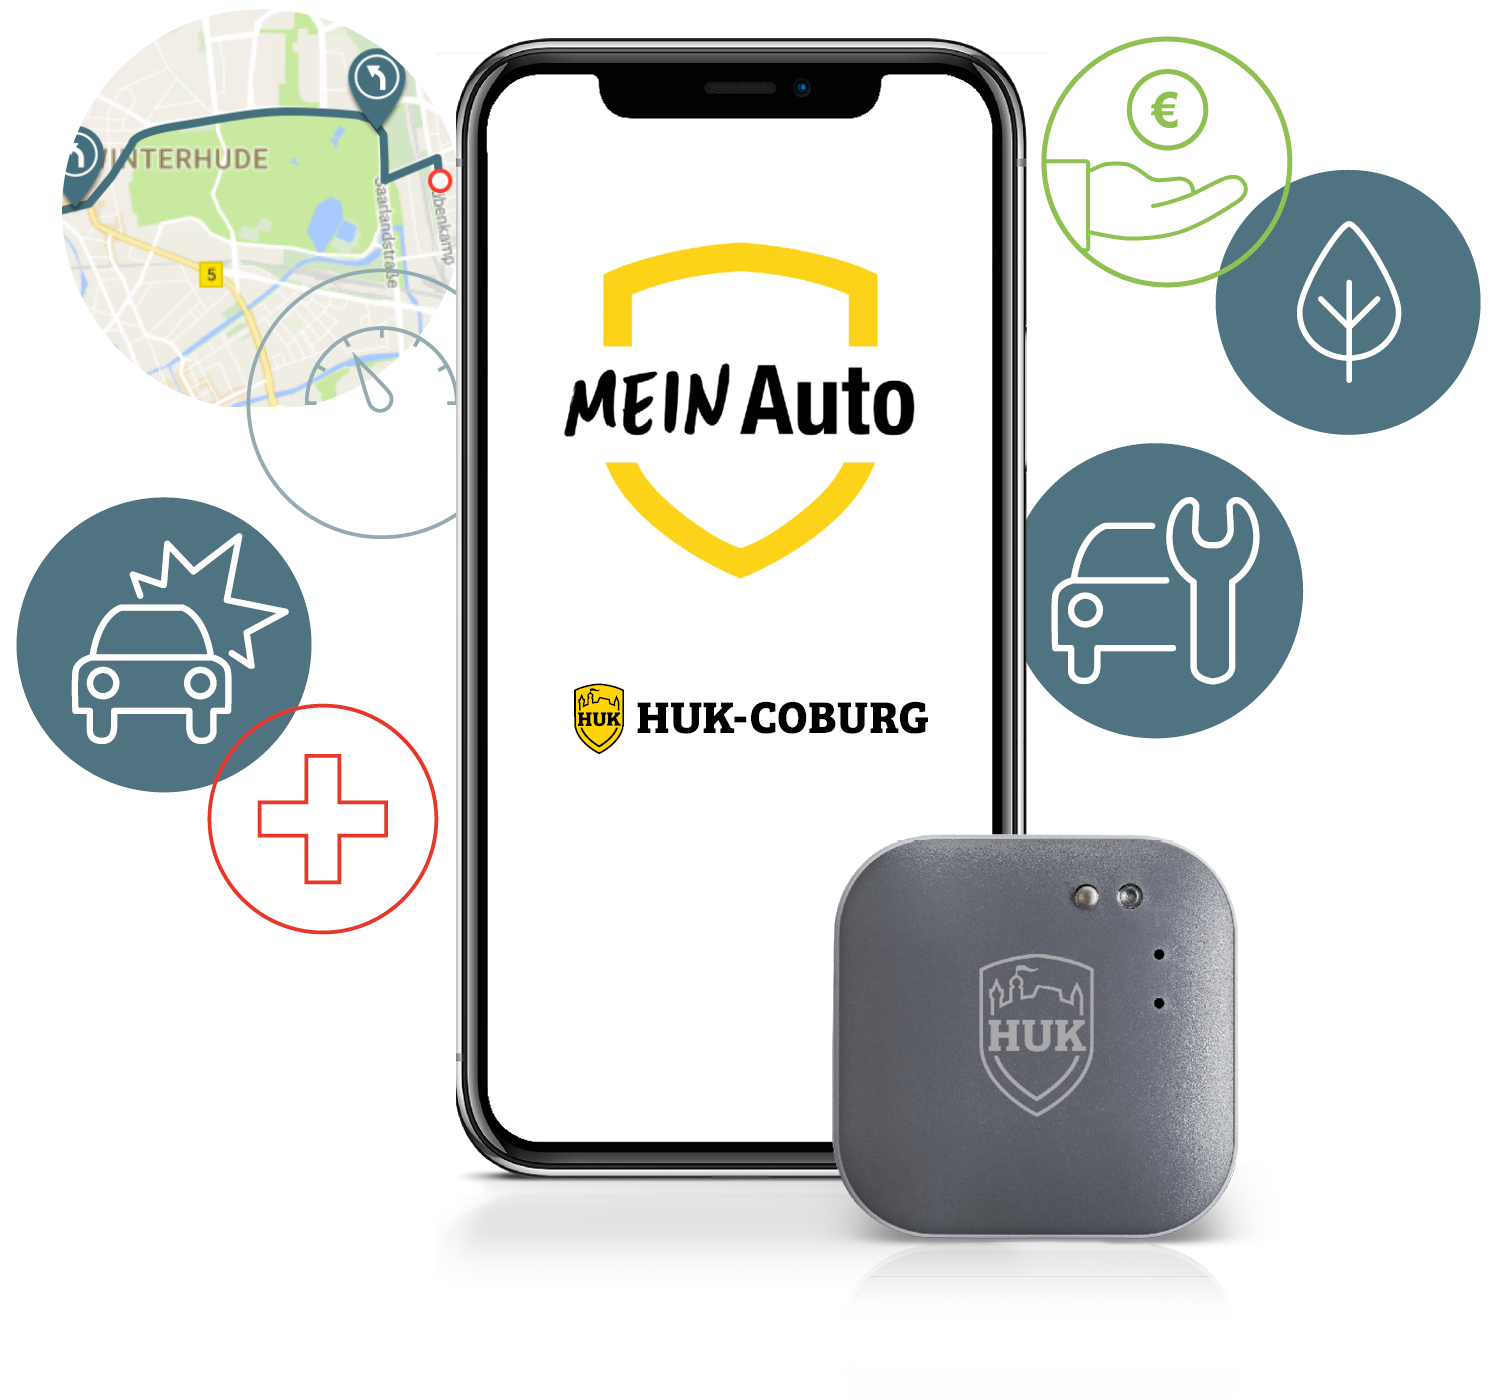 Handy mit Startbildschirm der App Mein Auto mit Telematik Box daneben